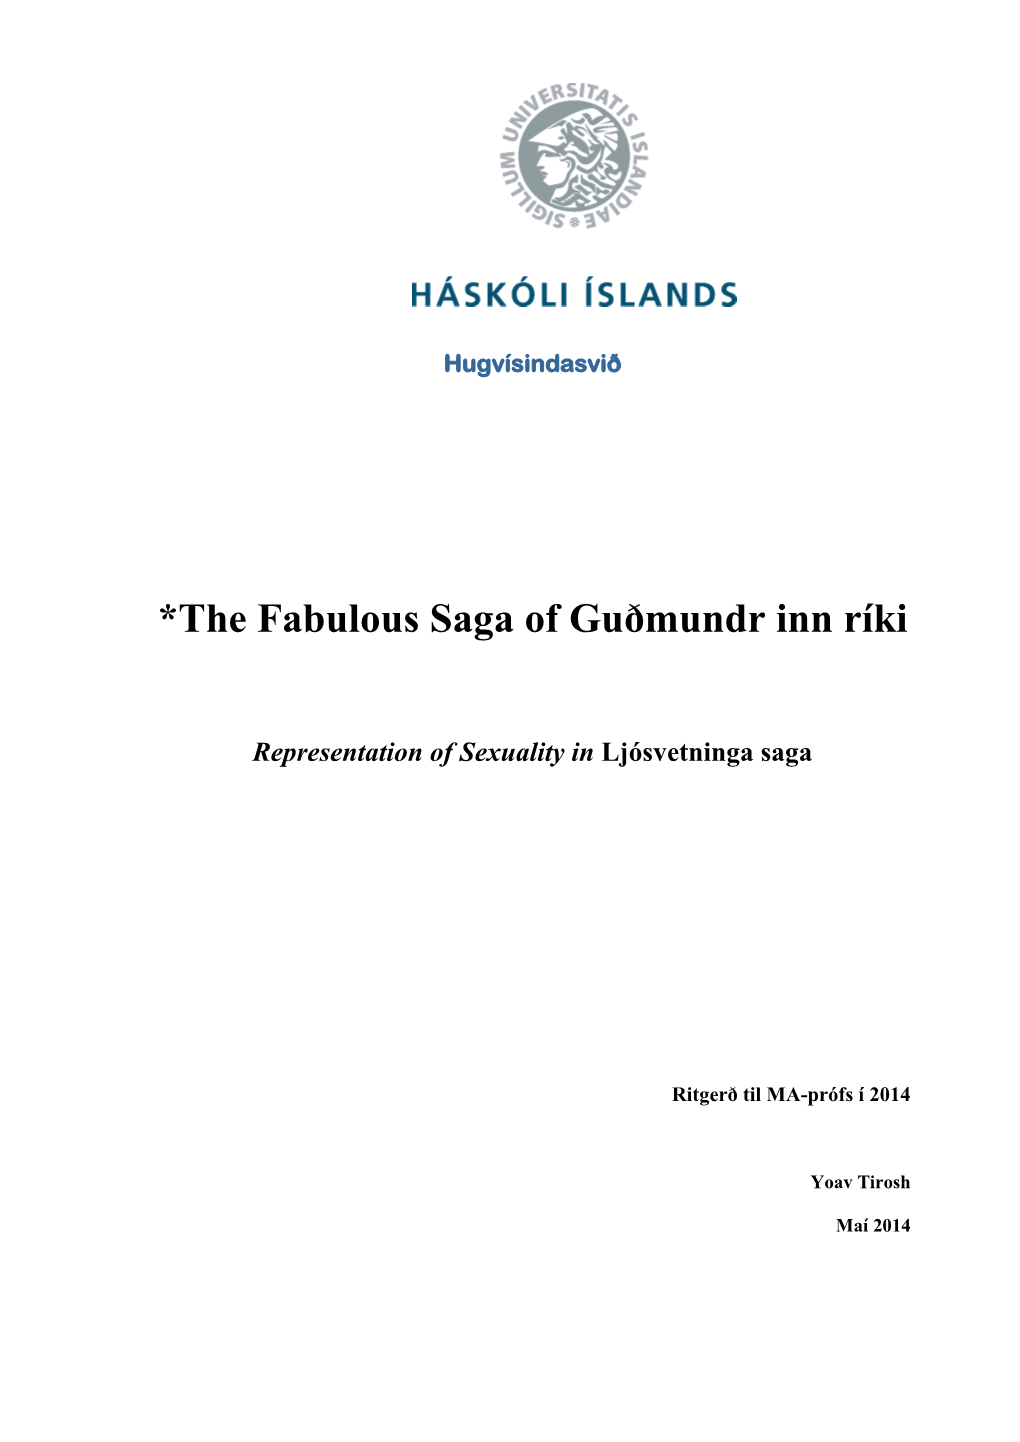 *The Fabulous Saga of Guðmundr Inn Ríki